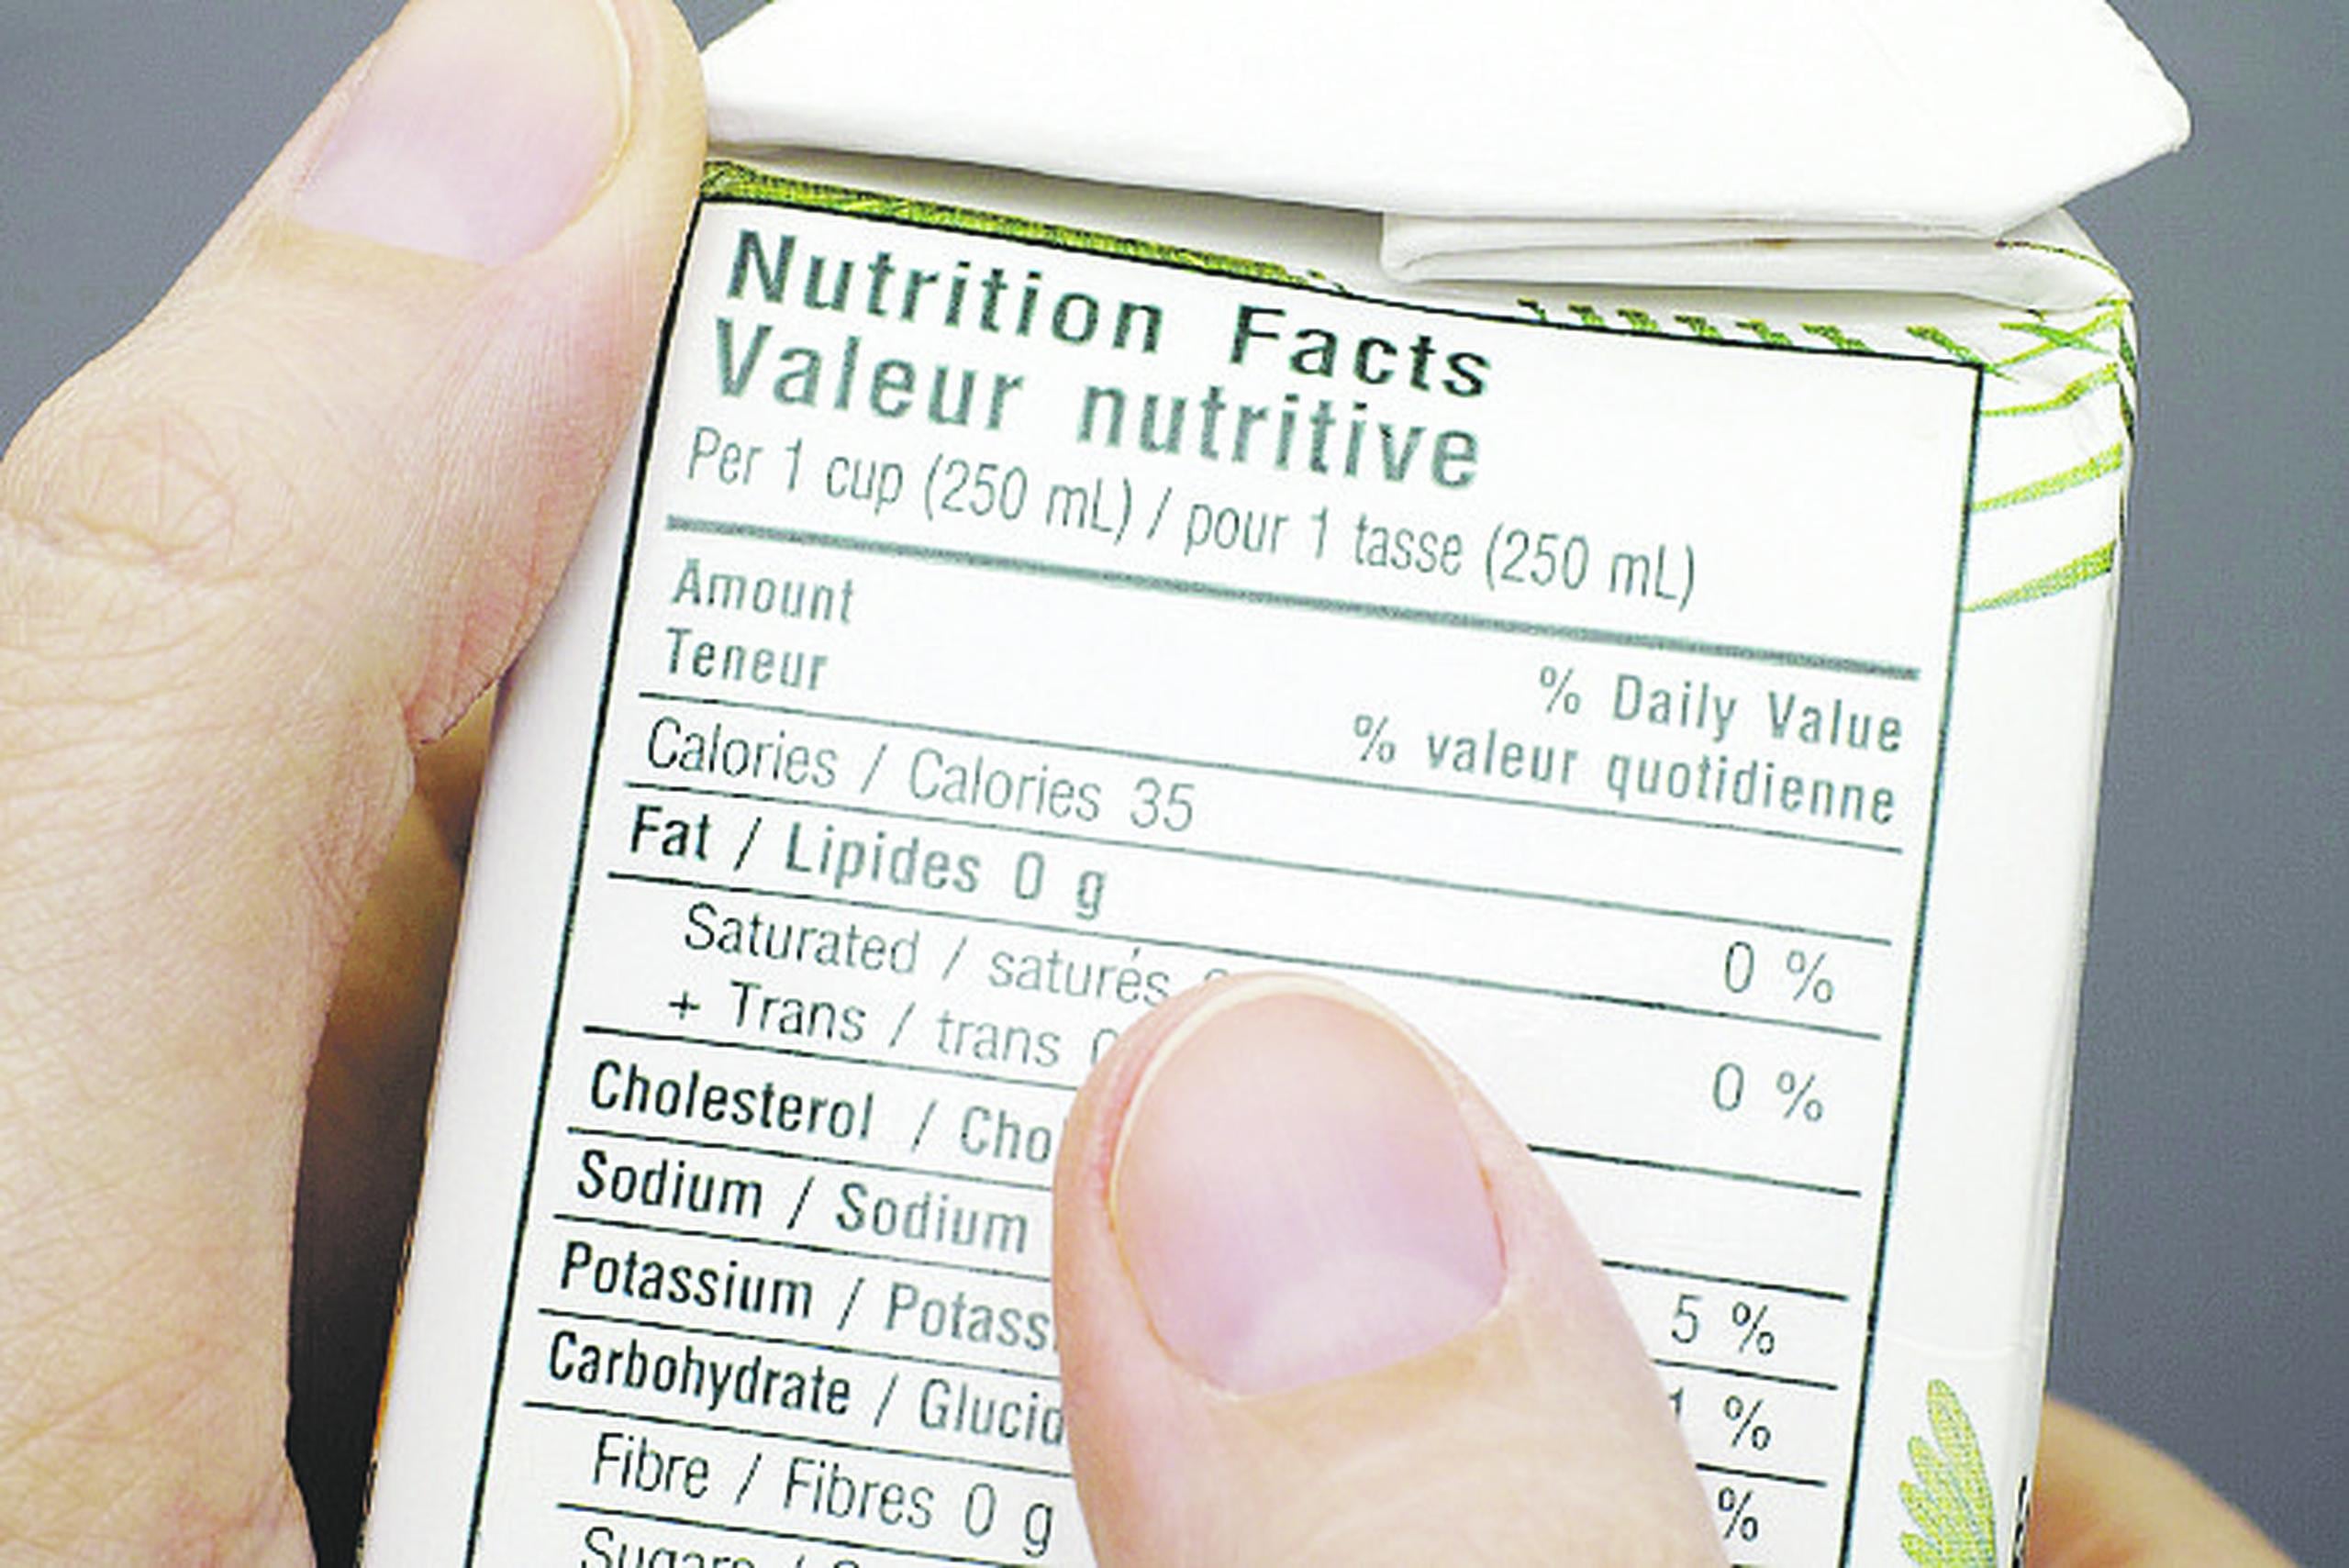 Leer las etiquetas de los alimentos te ayudará a escoger aquellos más saludables.